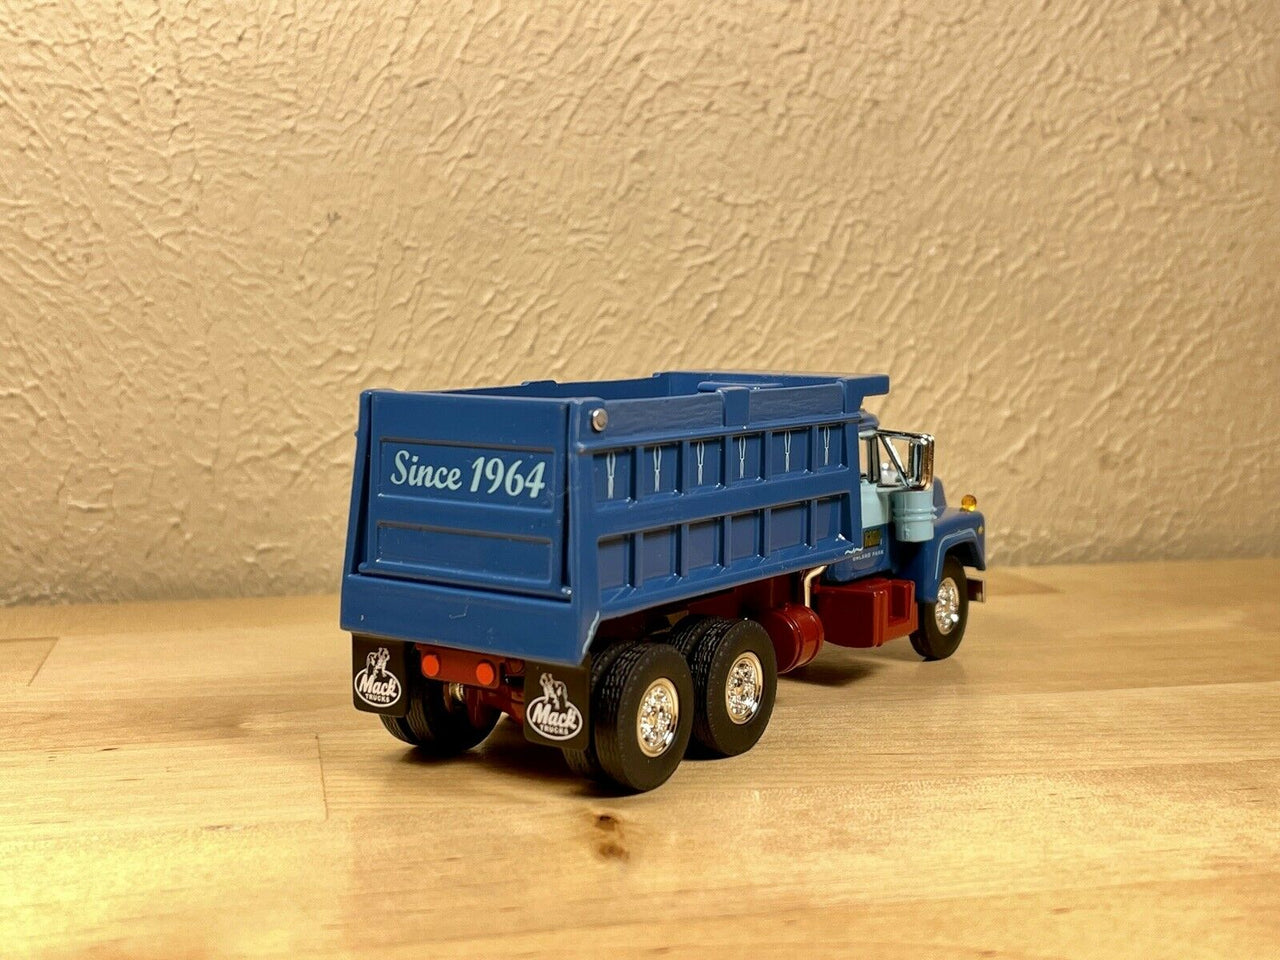 60-1161 Mack Sid Kamp Dump Truck Scale 1:64